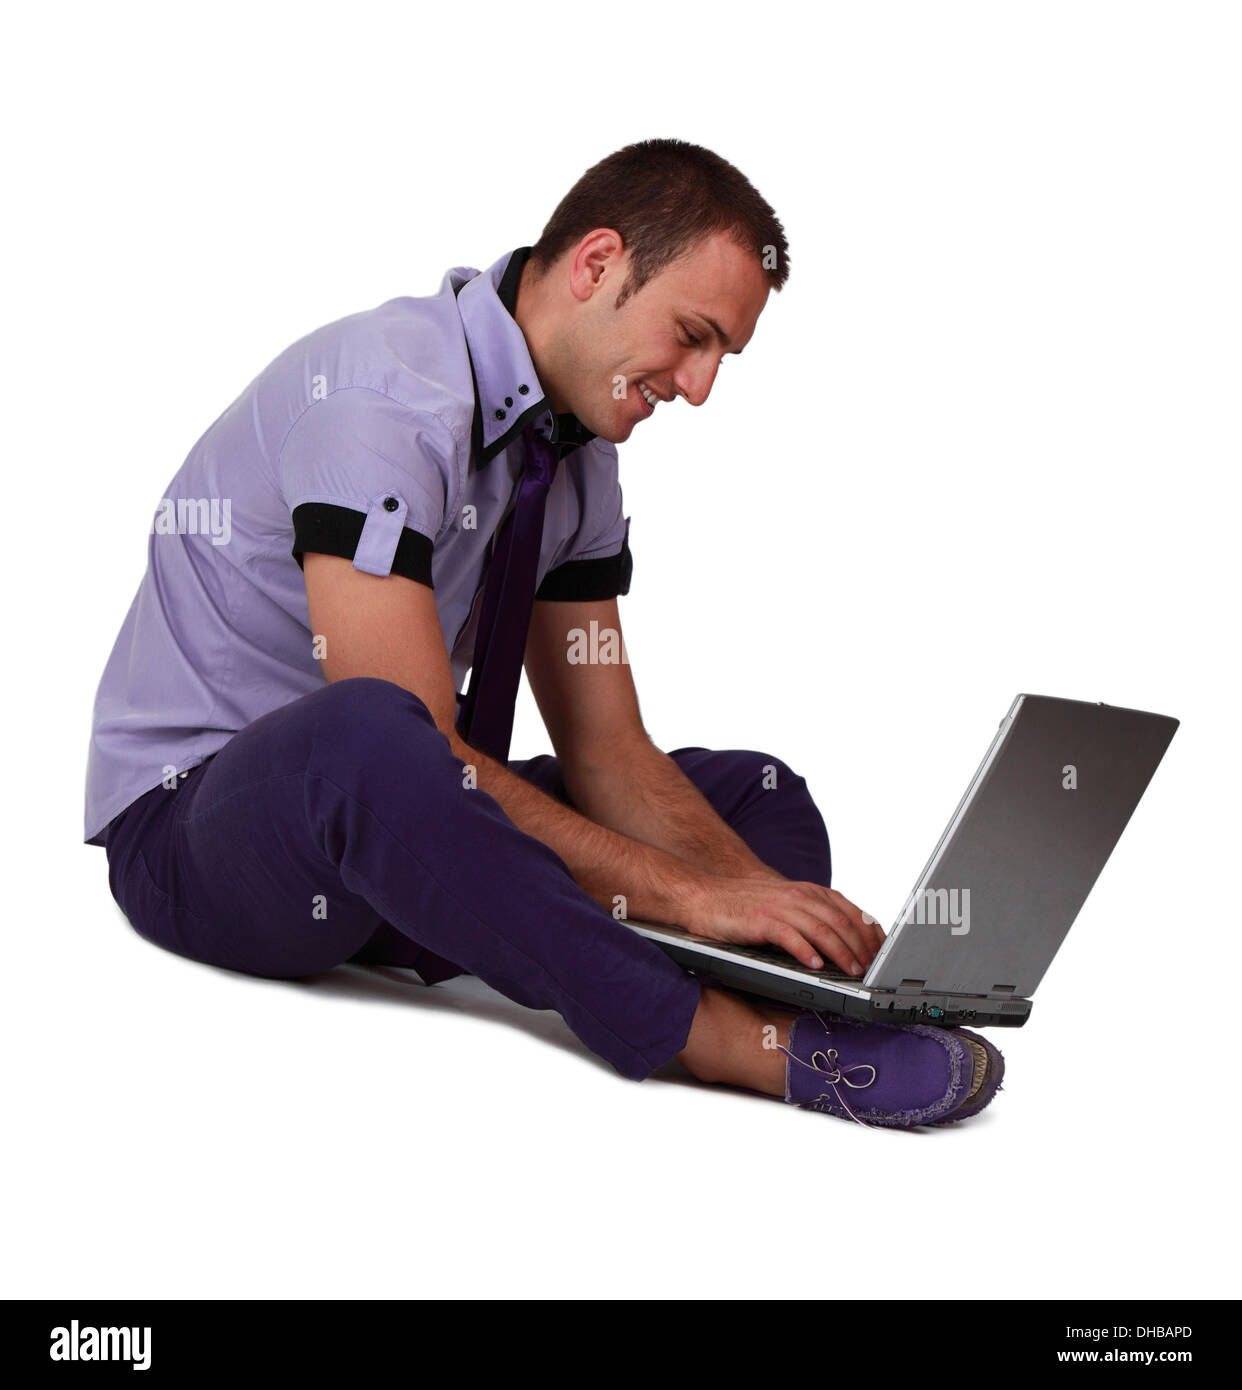 Junger Mann sitzt und arbeitet an seinem Laptop an den Füßen, vor einem weißen Hintergrund isoliert. Stockfoto